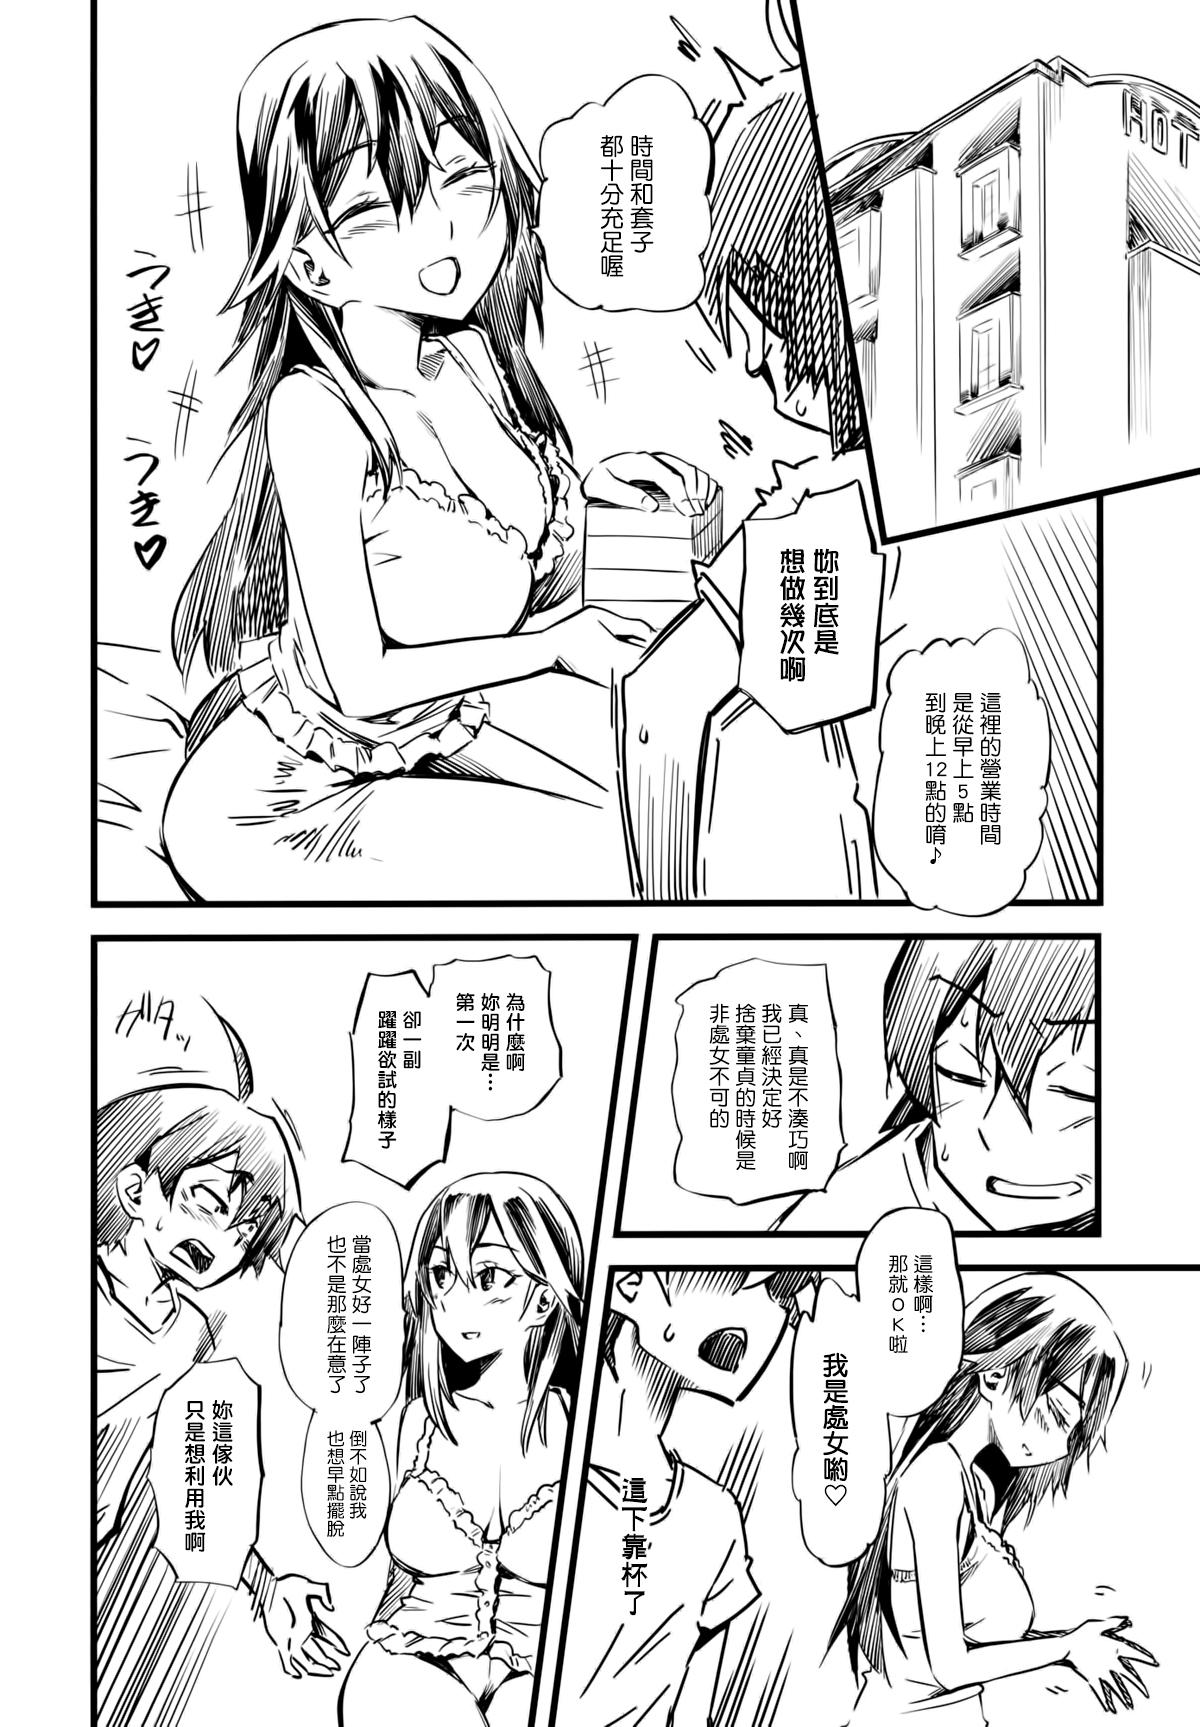 Huge Tits Service Time - Yahari ore no seishun love come wa machigatteiru Perfect Body - Page 5